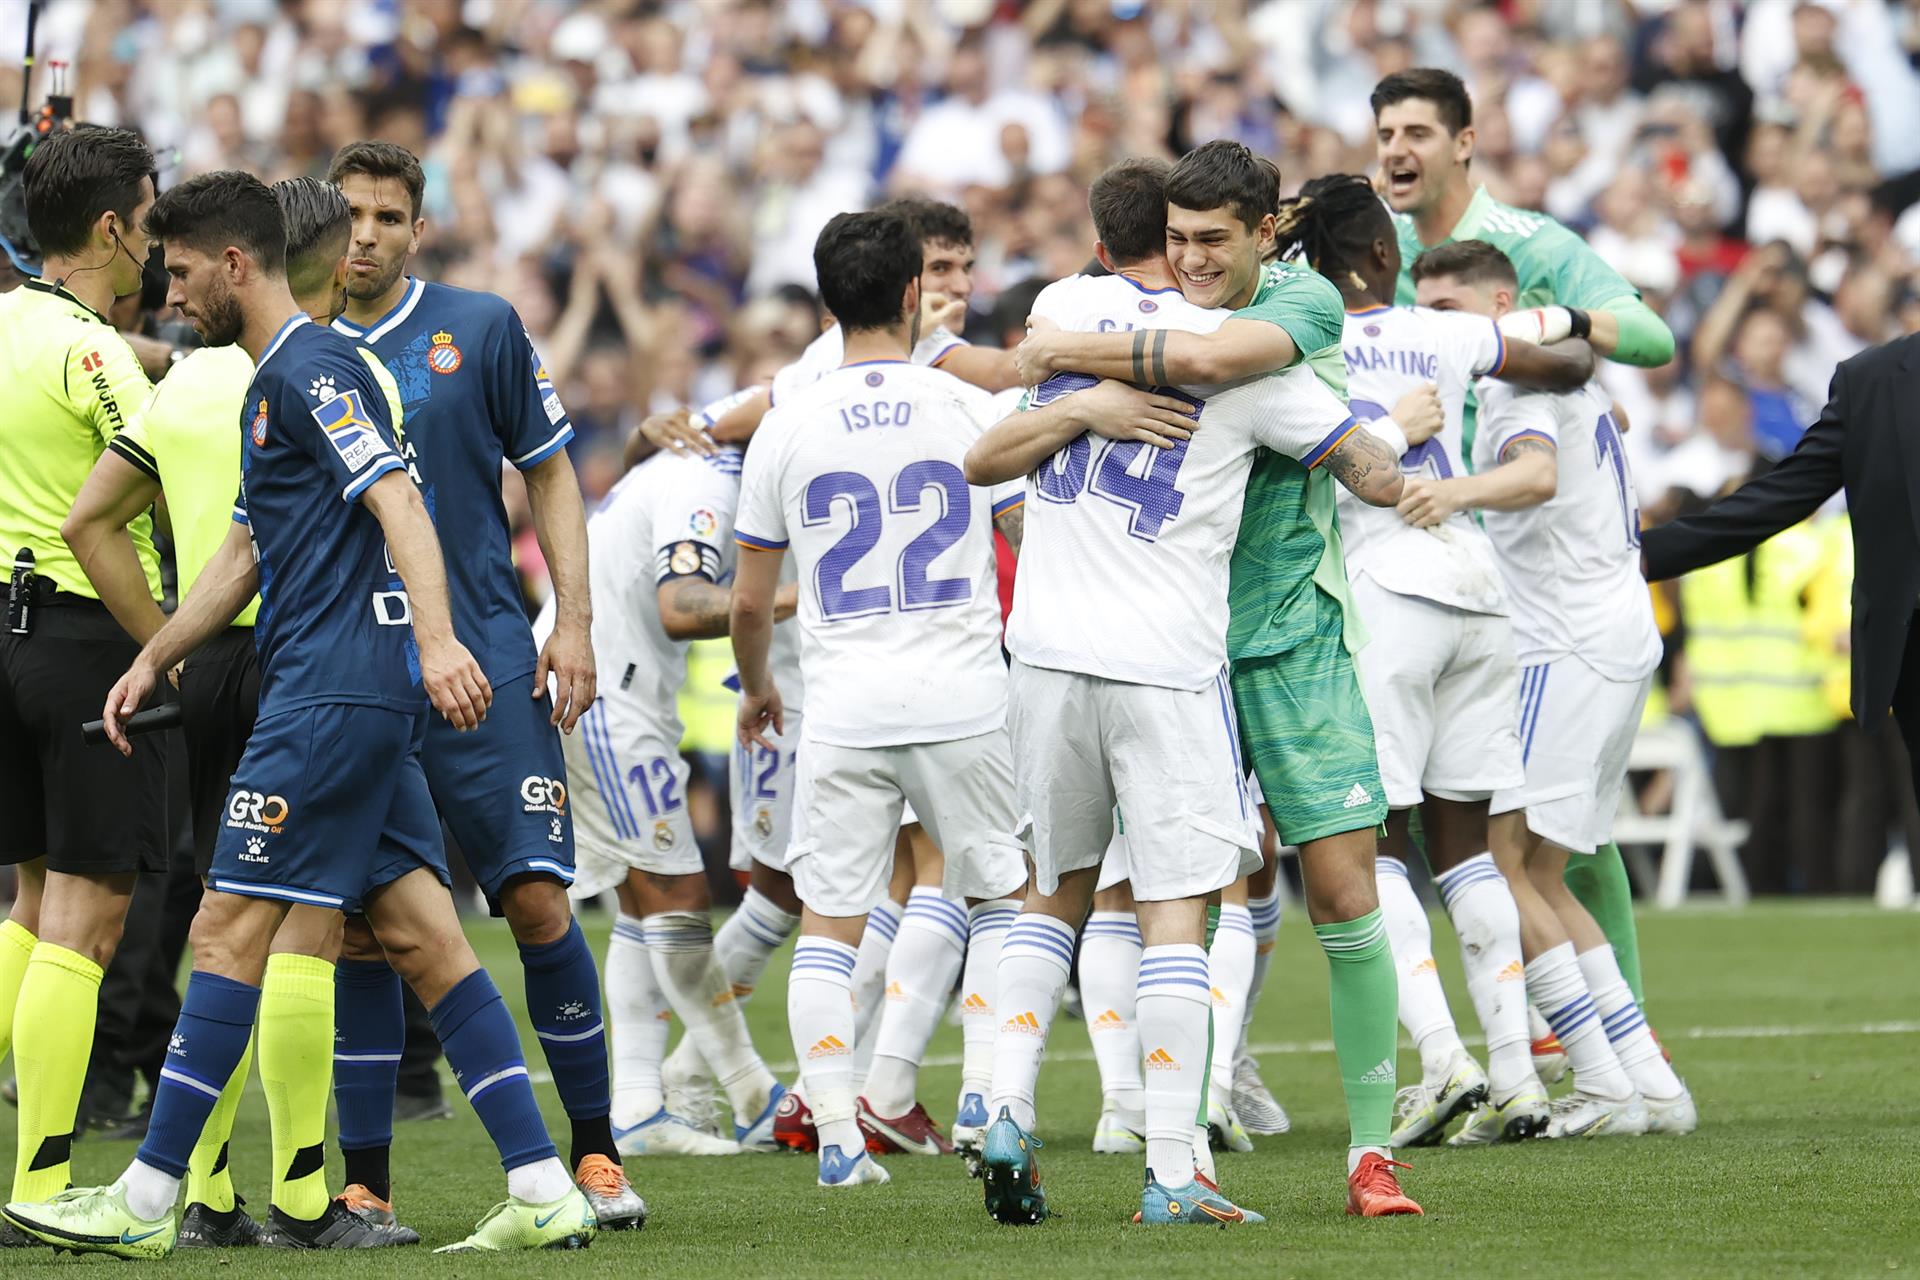 Los jugadores del Real Madrid celebran su victoria ante el Espanyol por 4-0, y por consiguiente su proclamación como Campeones de la Liga, al finalizar el partido disputado en el estadio Santiago Bernabéu de la capital. EFE/Chema Moya
